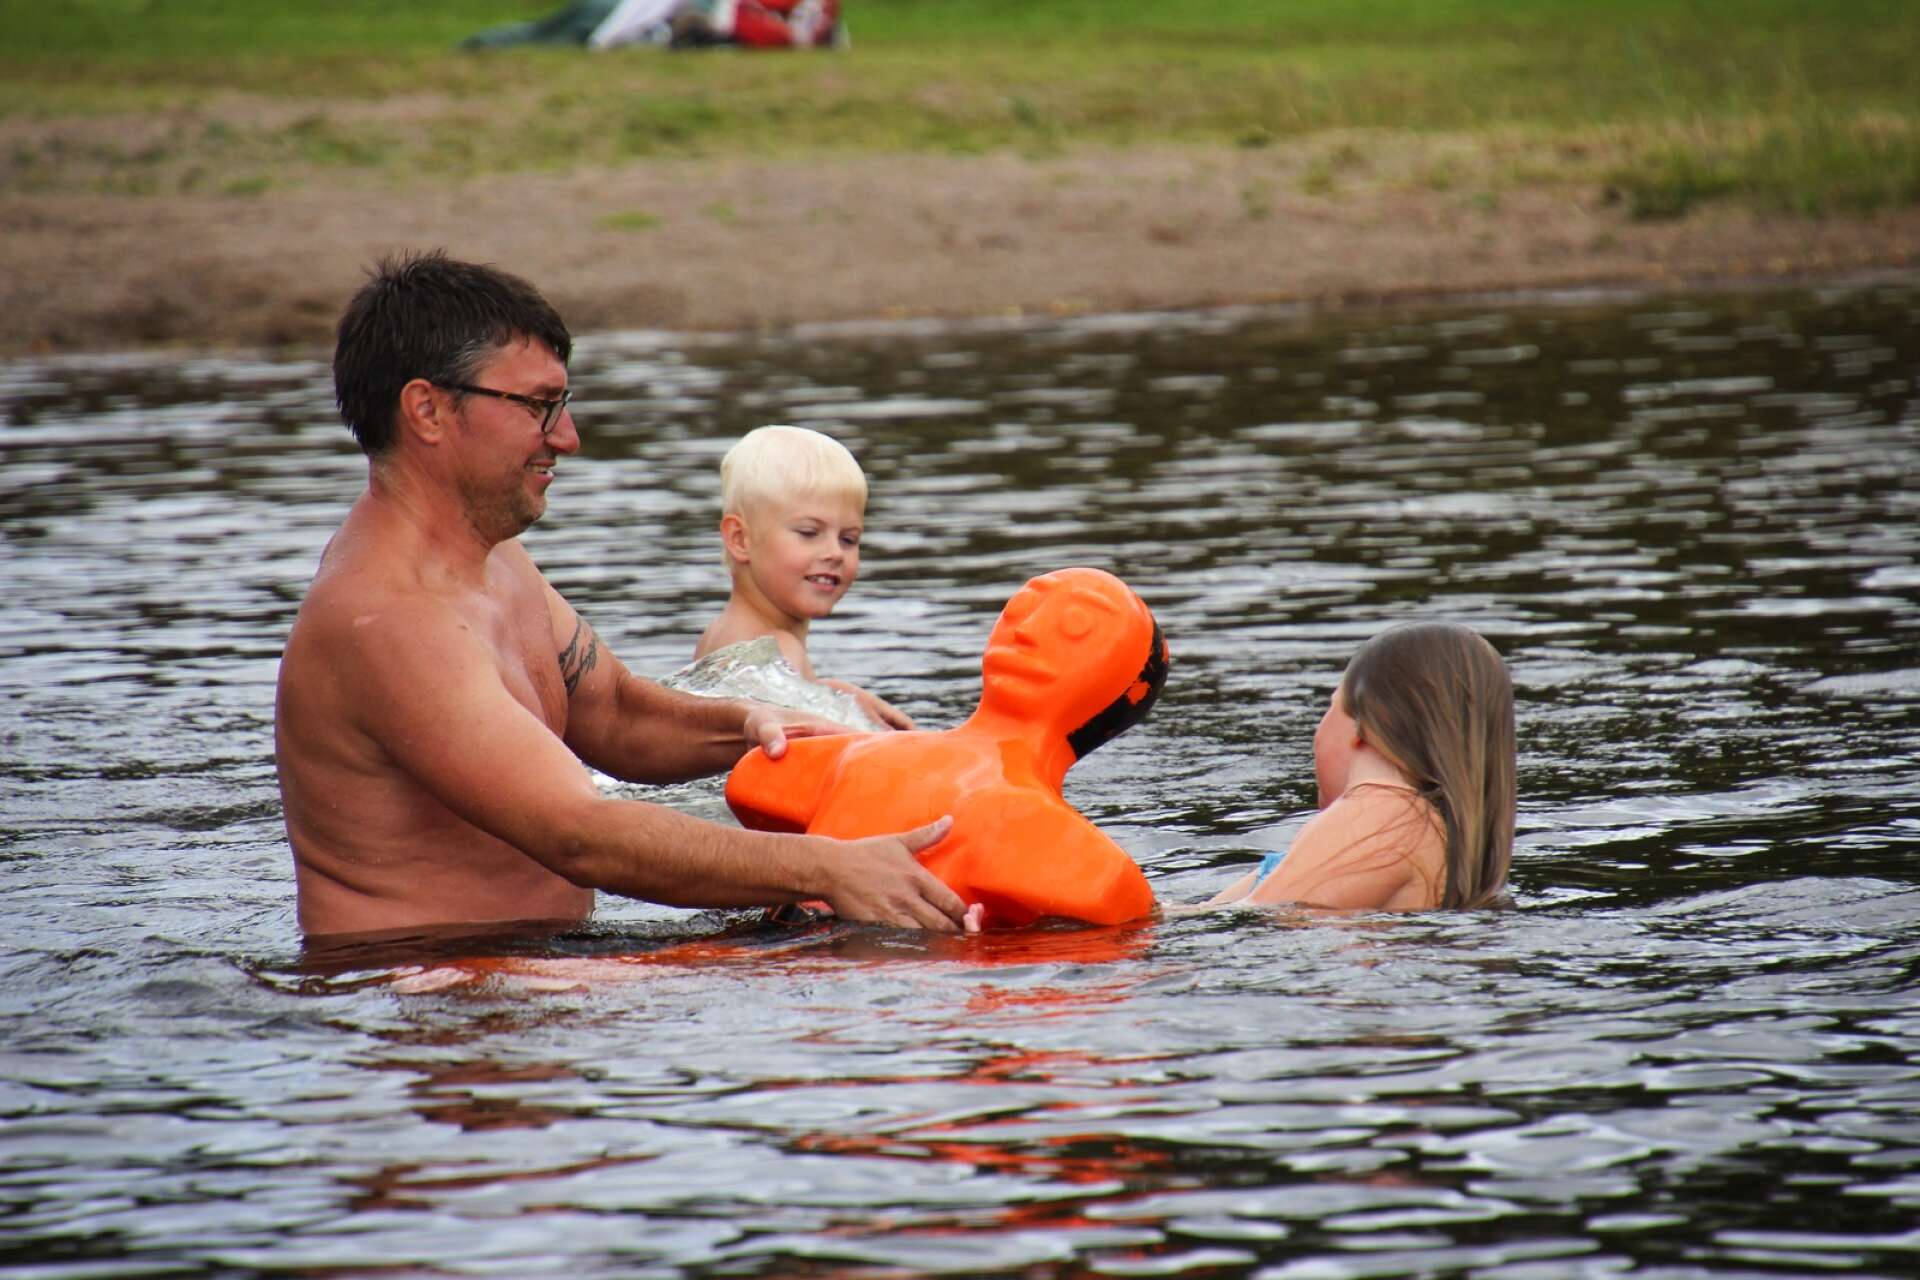 Rekordmånga barn vill lära sig att simma hos Magnus. I år har han hela fyra grupper med barn på olika nivåer.